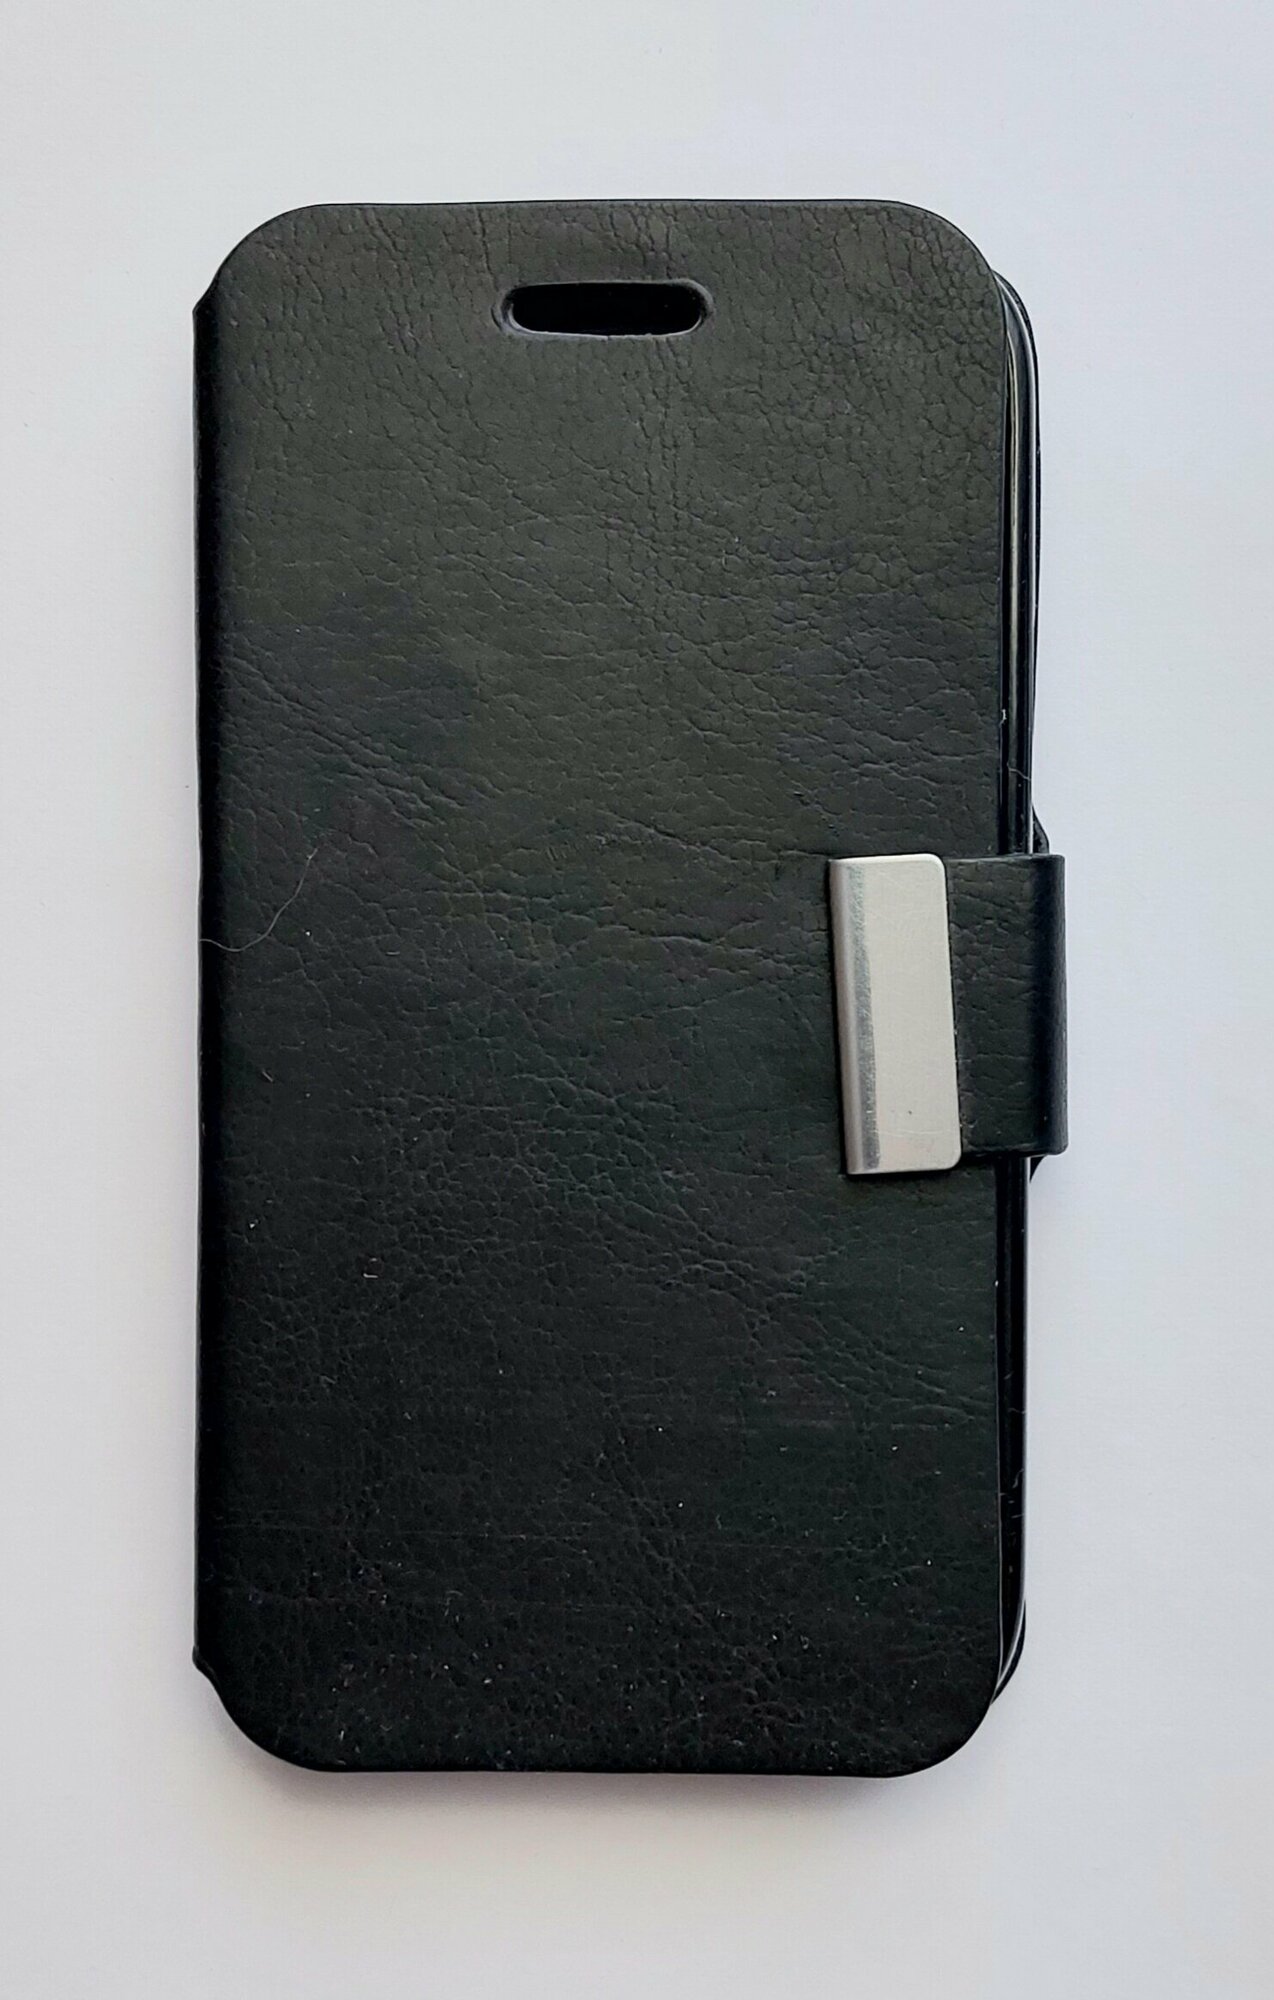 Чехол книжка для Samsung i9190/i9192/i9195 S4 mini чёрная